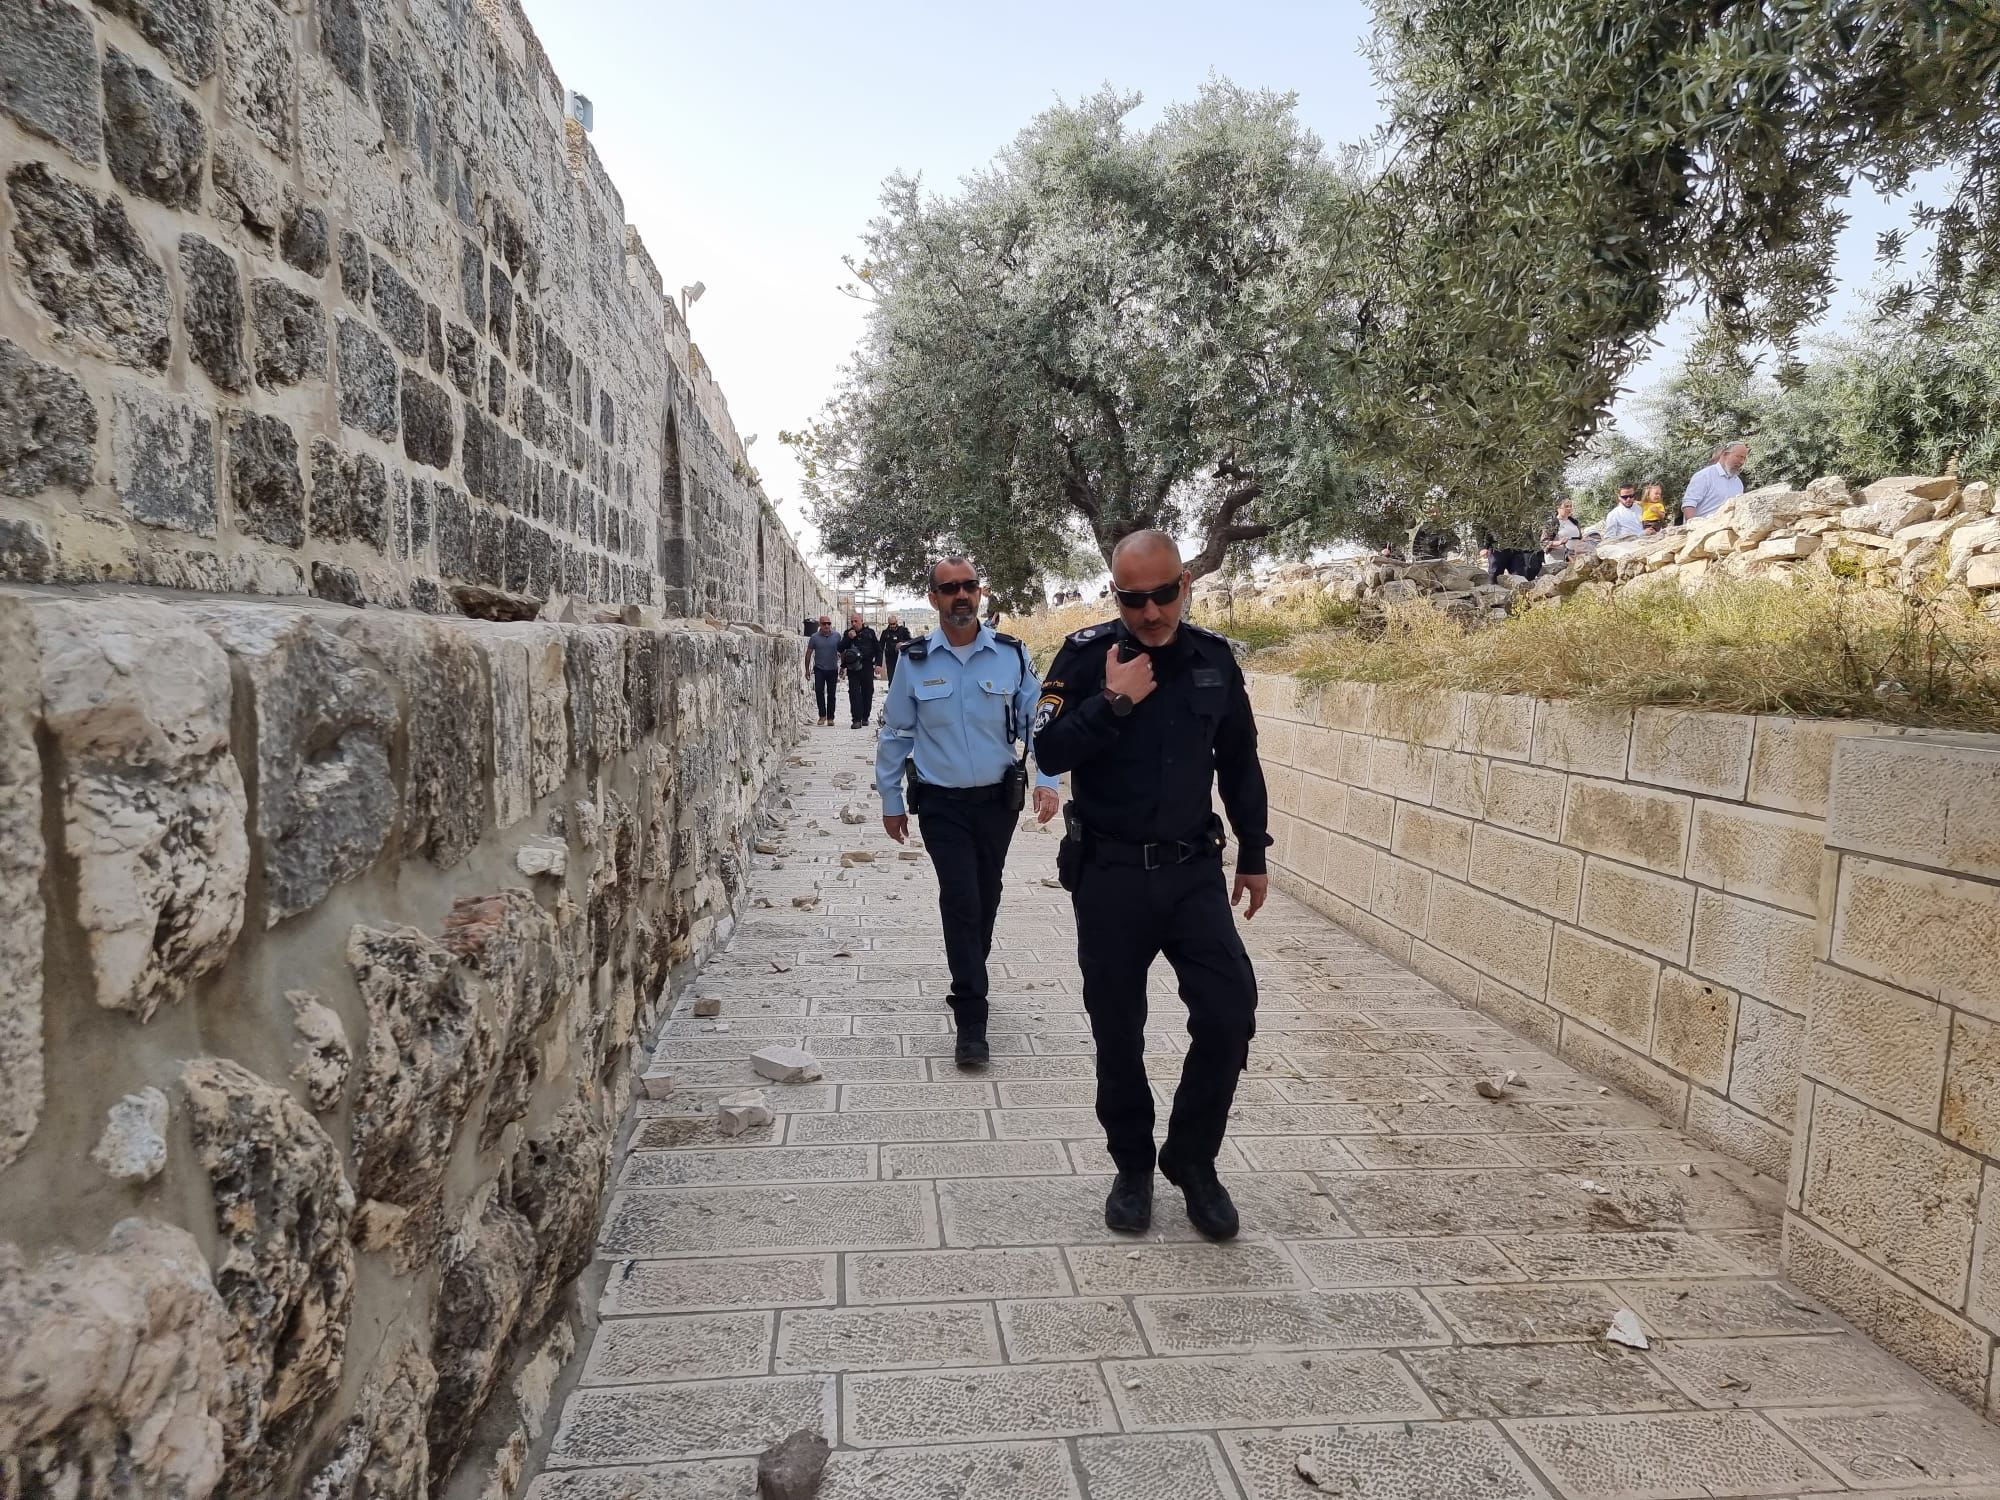 9 חשודים נעצרו בהפקות הסדר הבוקר בירושלים